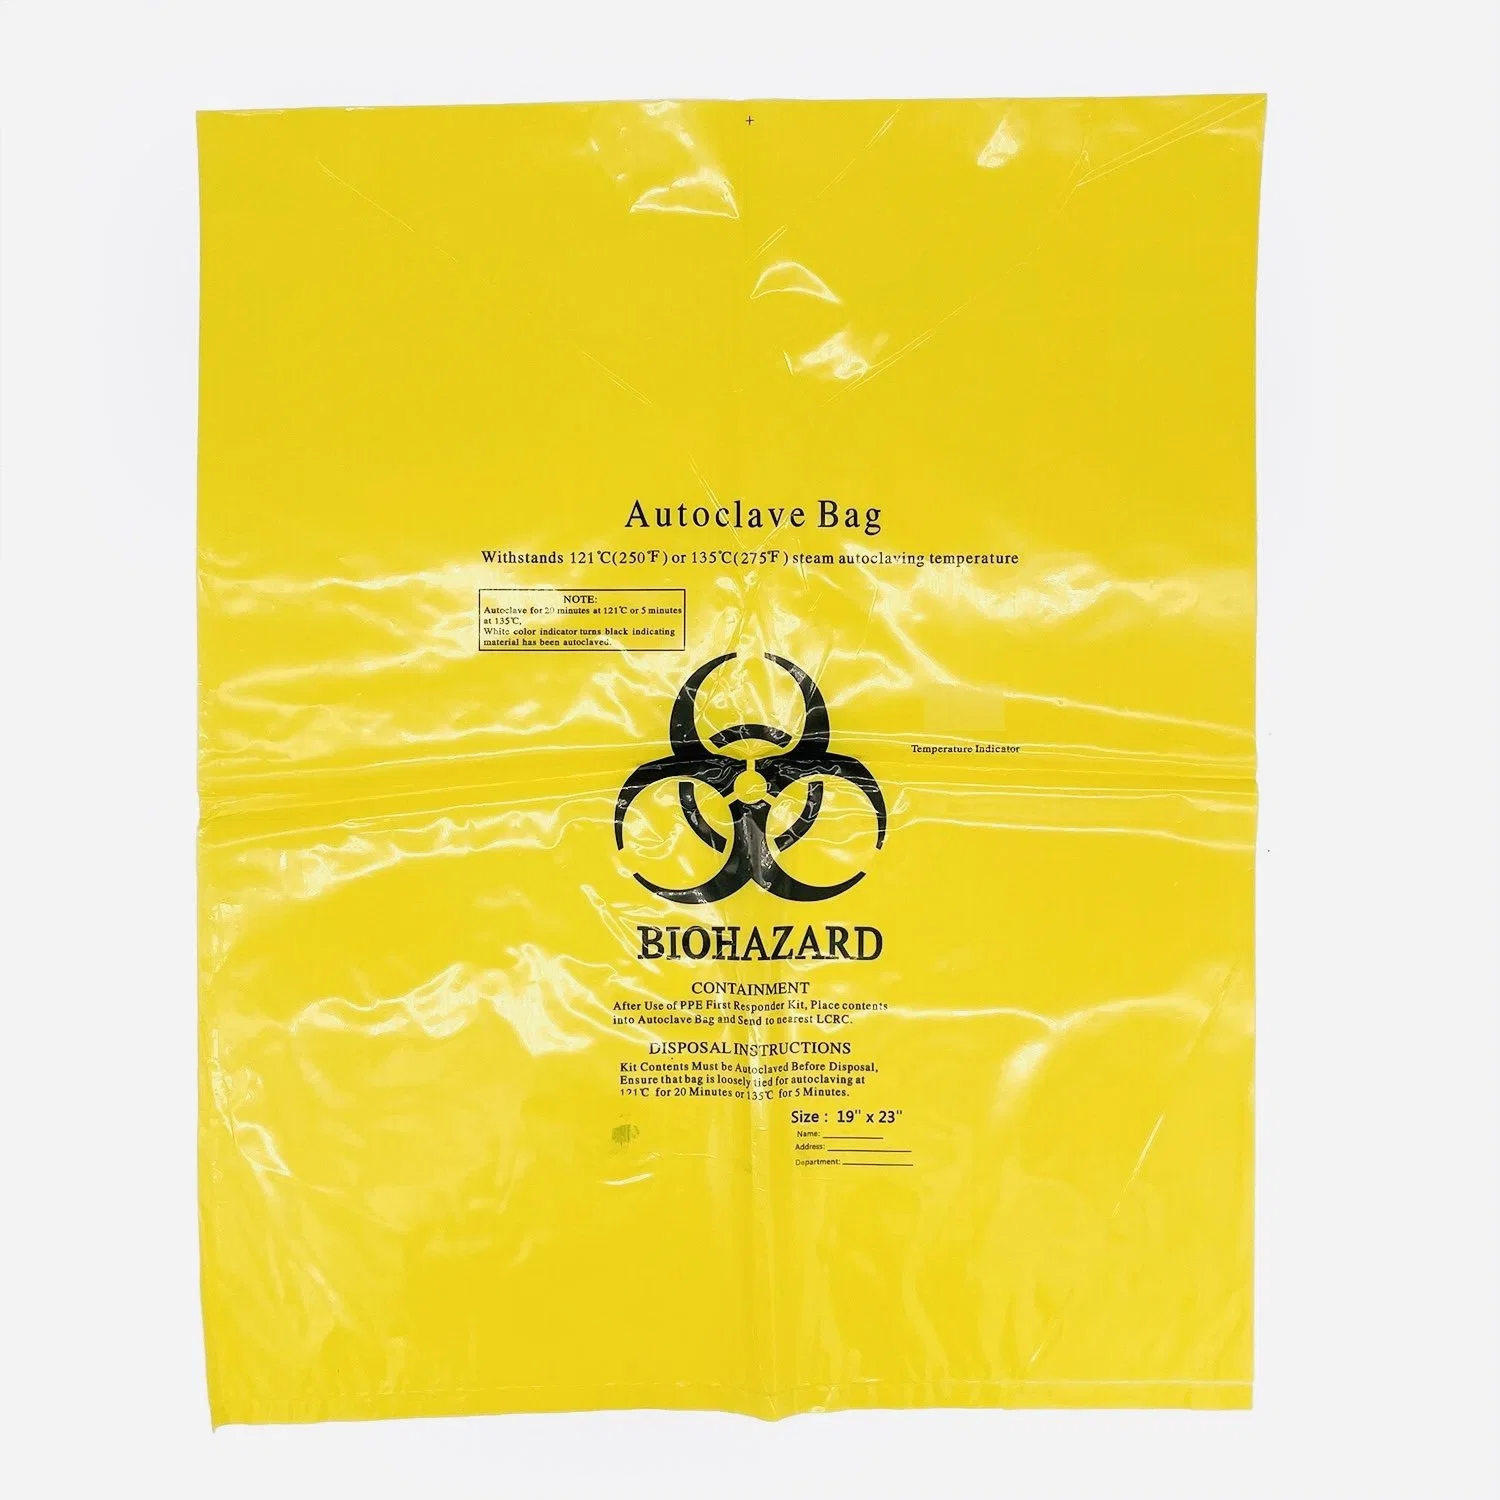 Пластиковый мешок для биологически опасных материалов желтого цвета с медной отделкой и мешком для мусора, пригодный для автоклавирования Сумка